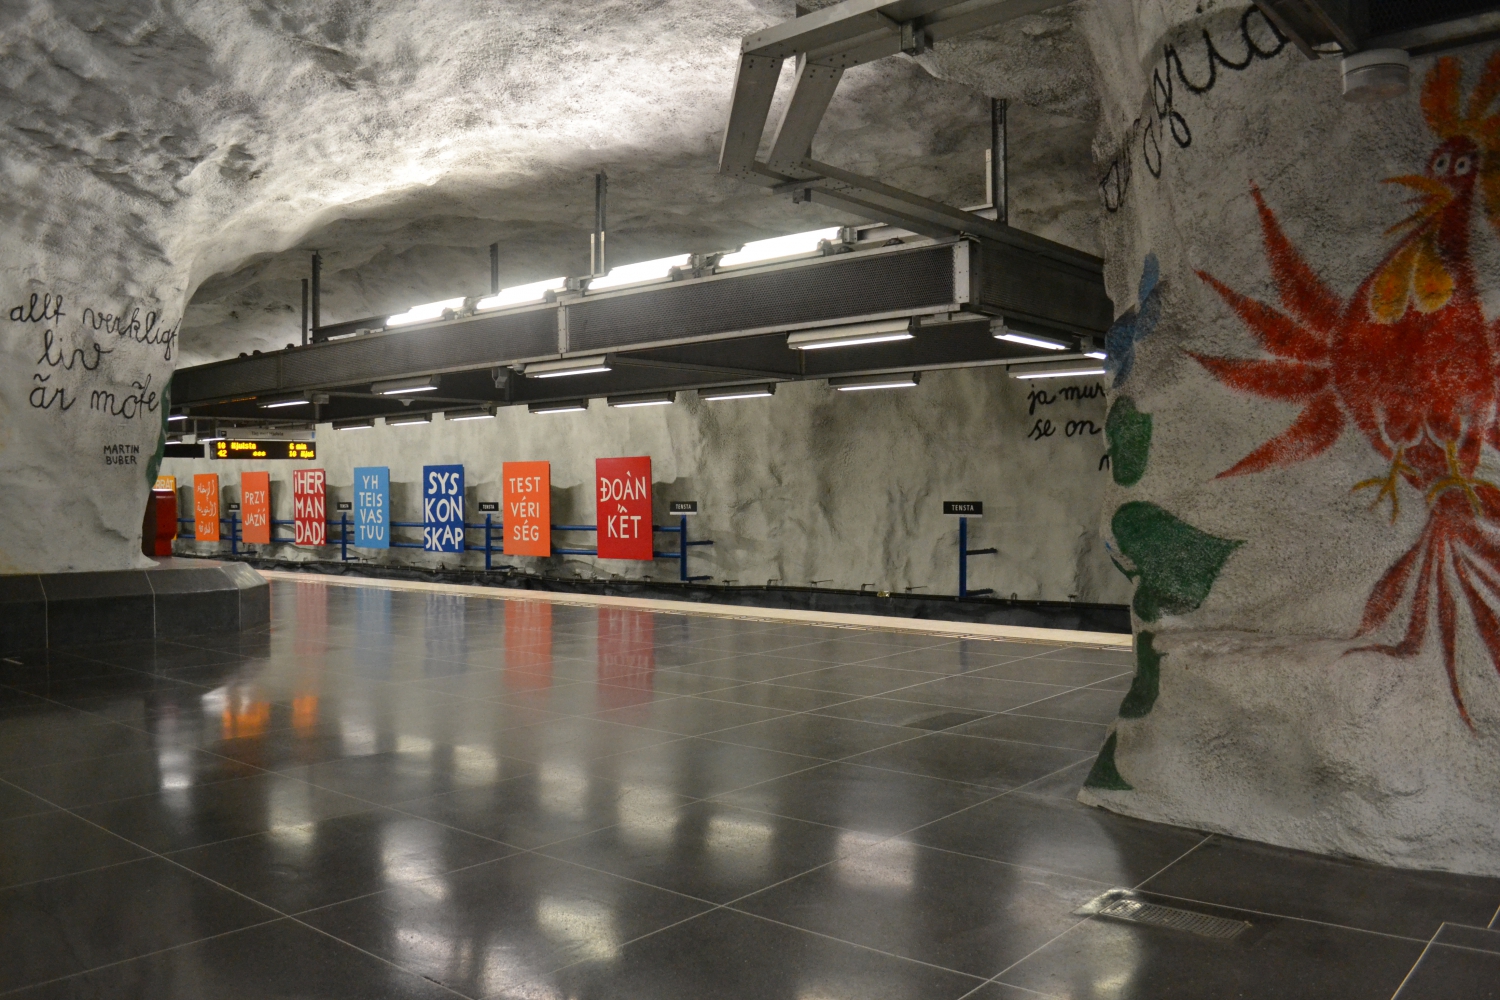 Tensta metróállomás (Fotó: Kovács Csaba)